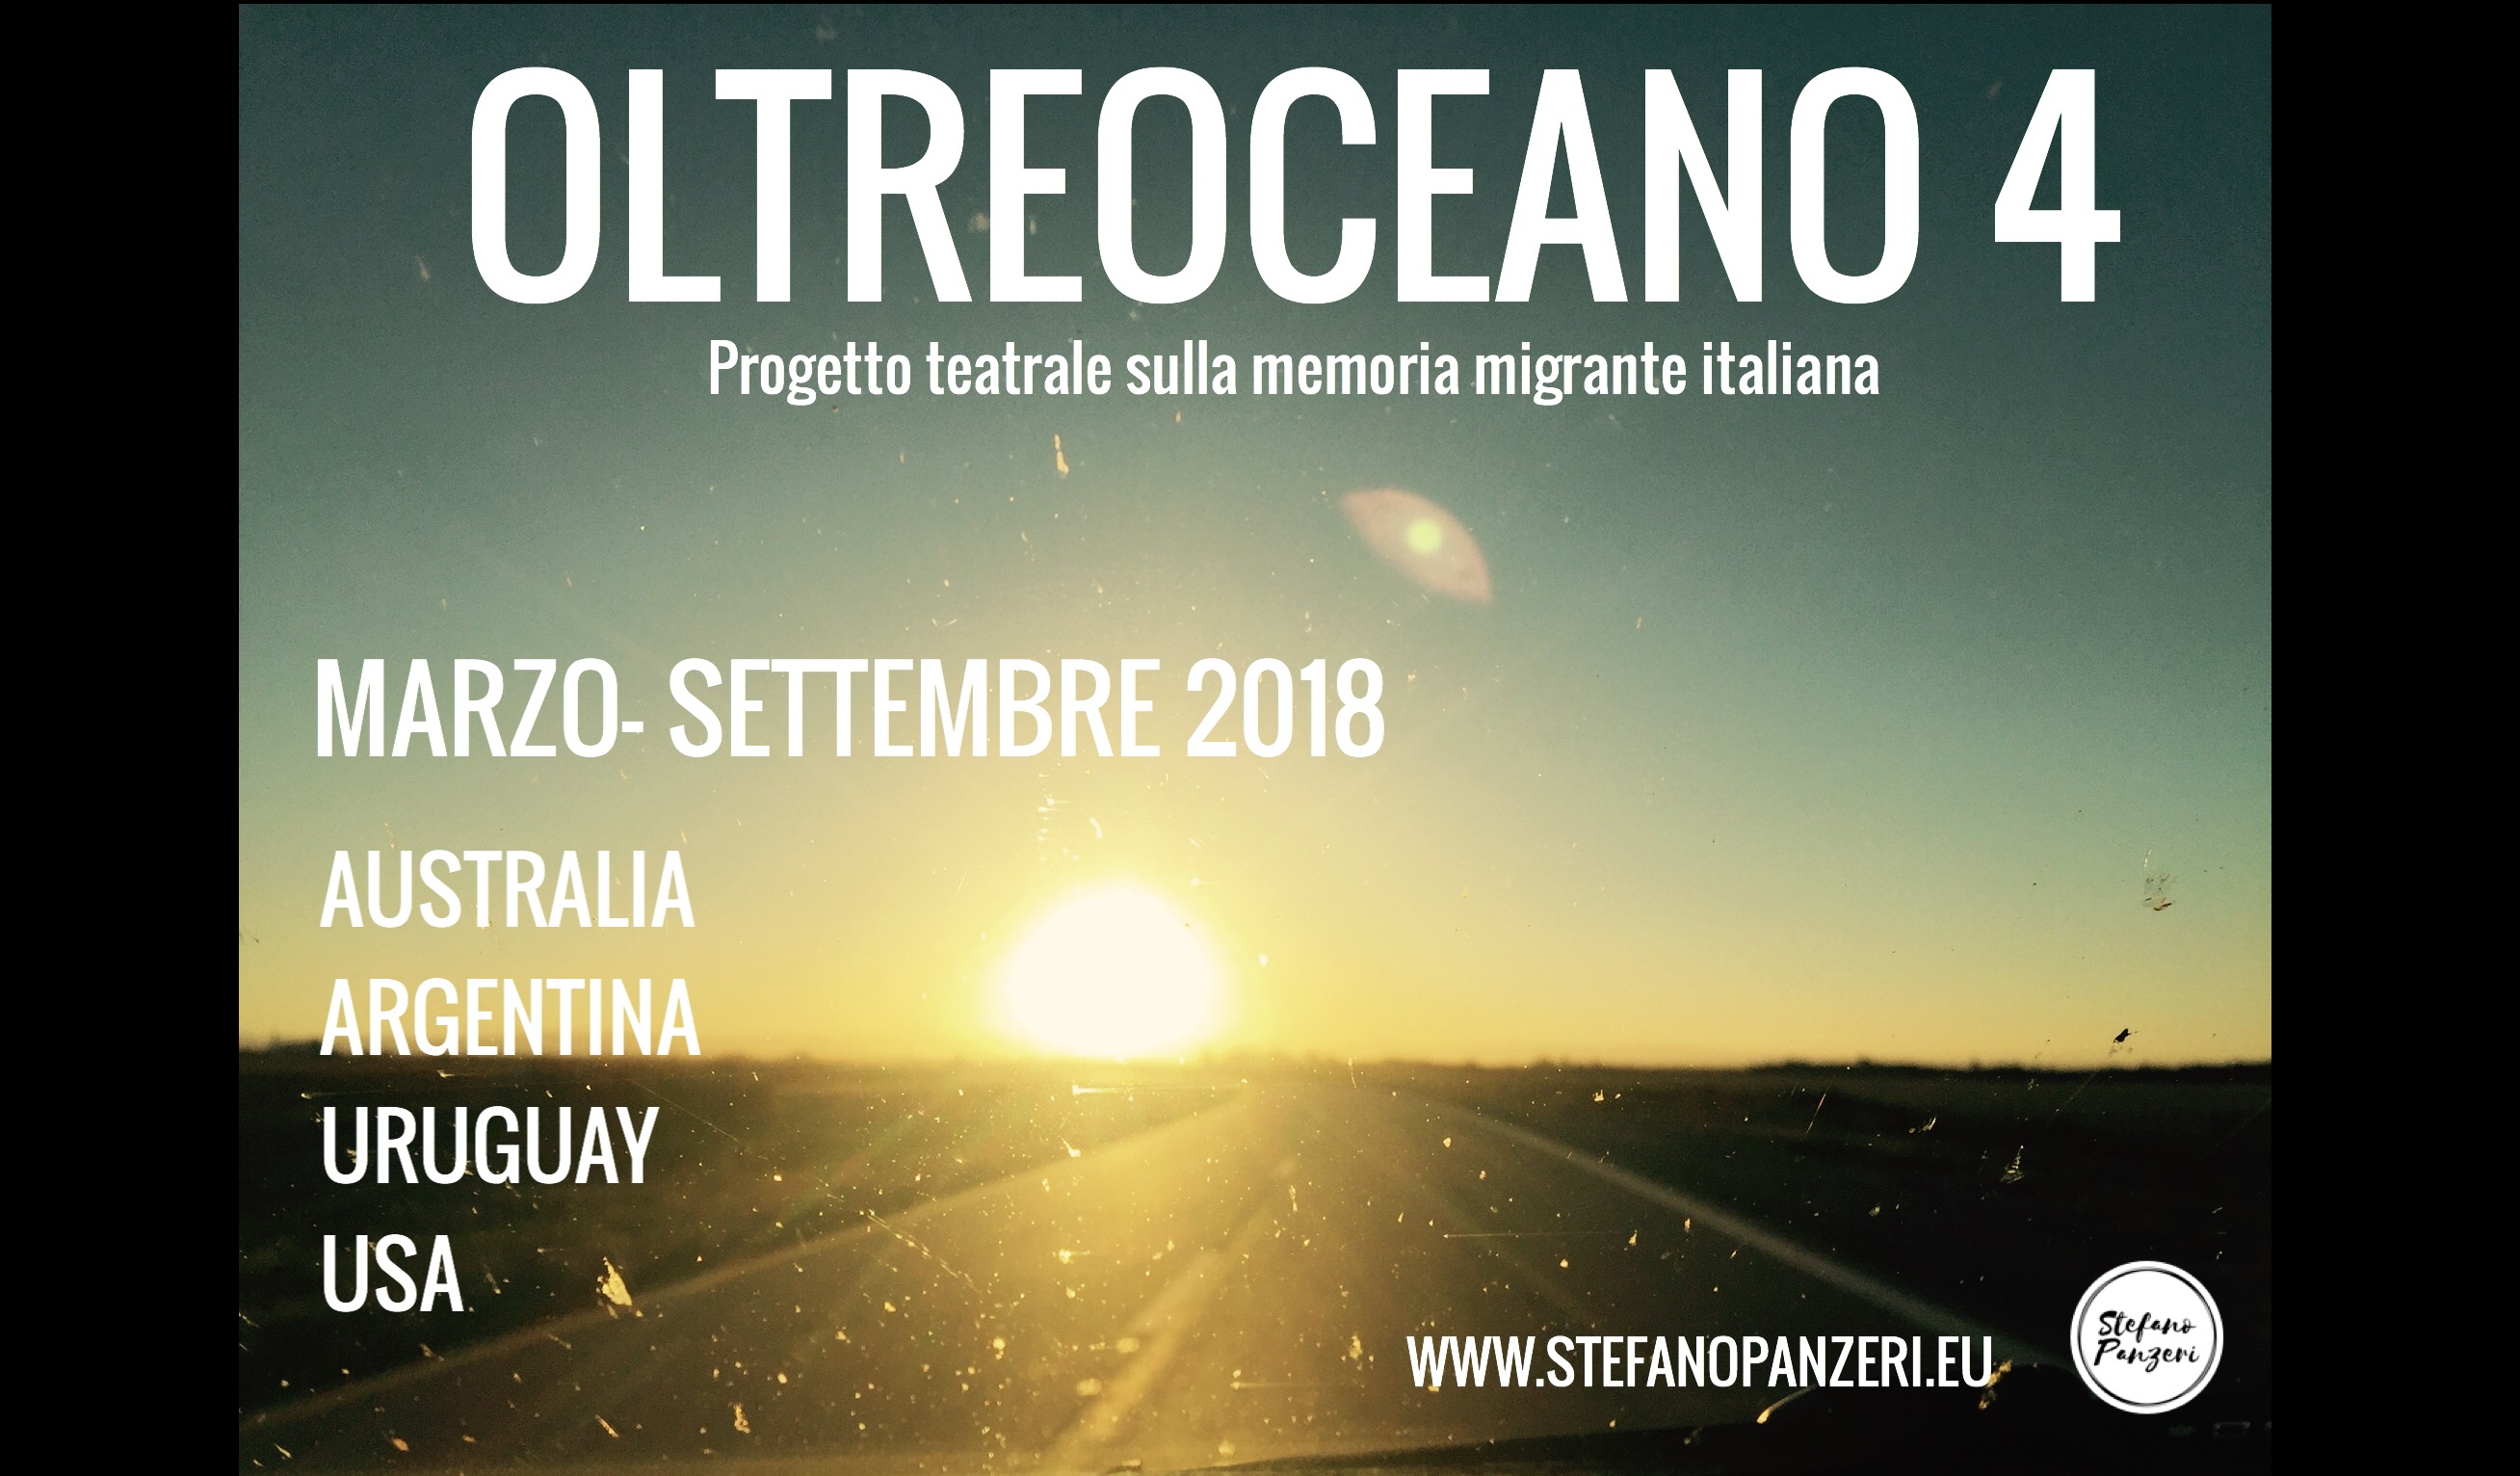 OLTREOCEANO 4 - La memoria migrante italiana in Australia, Argentina e USA marzo-settembre 2018